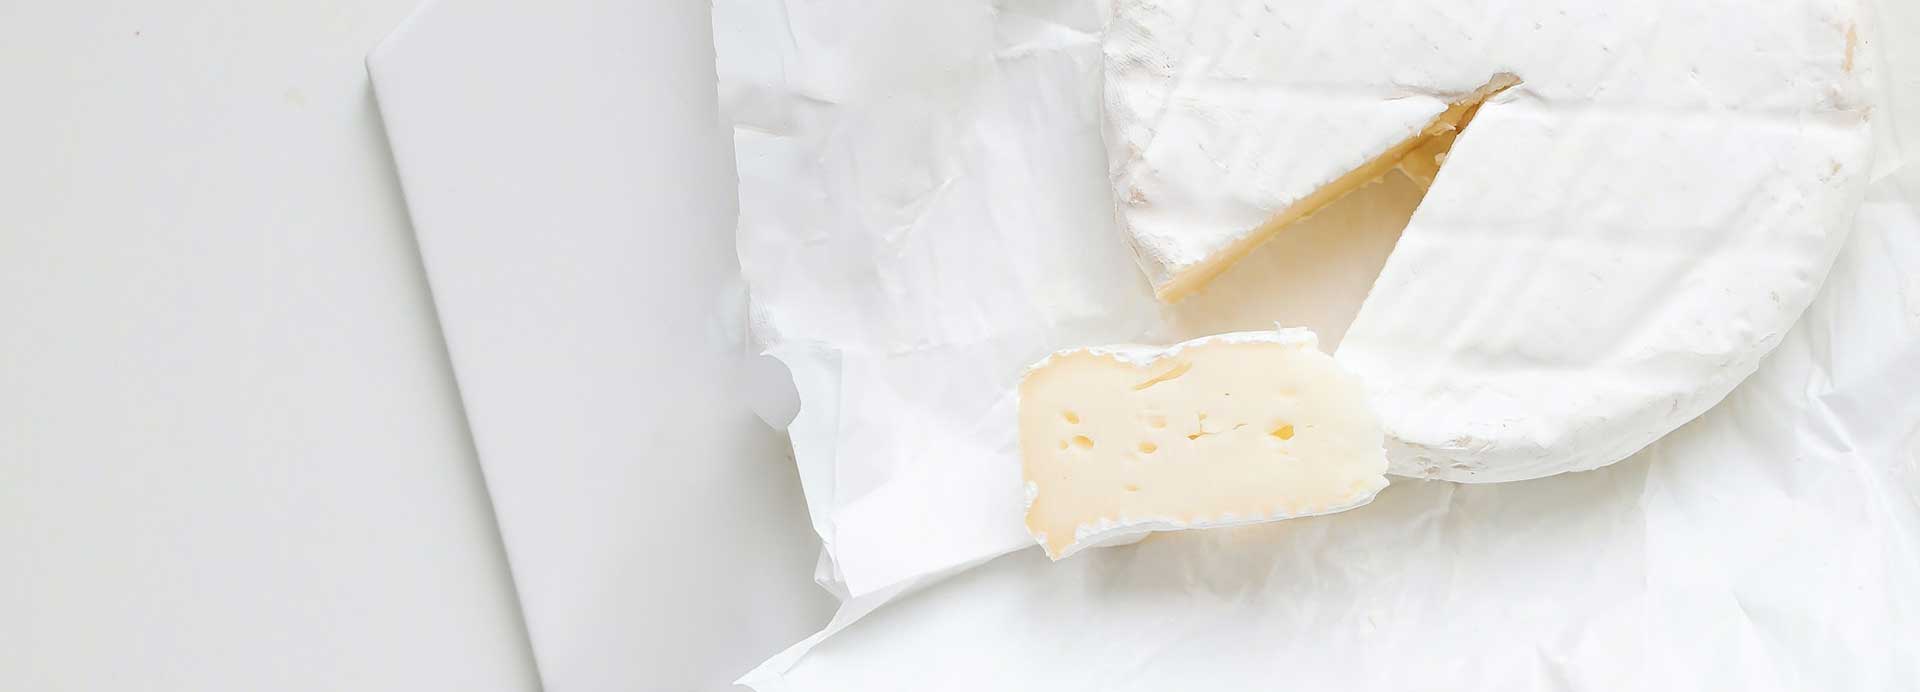 Explorando la compatibilidad de la intolerancia a la lactosa y el consumo de yogur y queso: una mirada científica